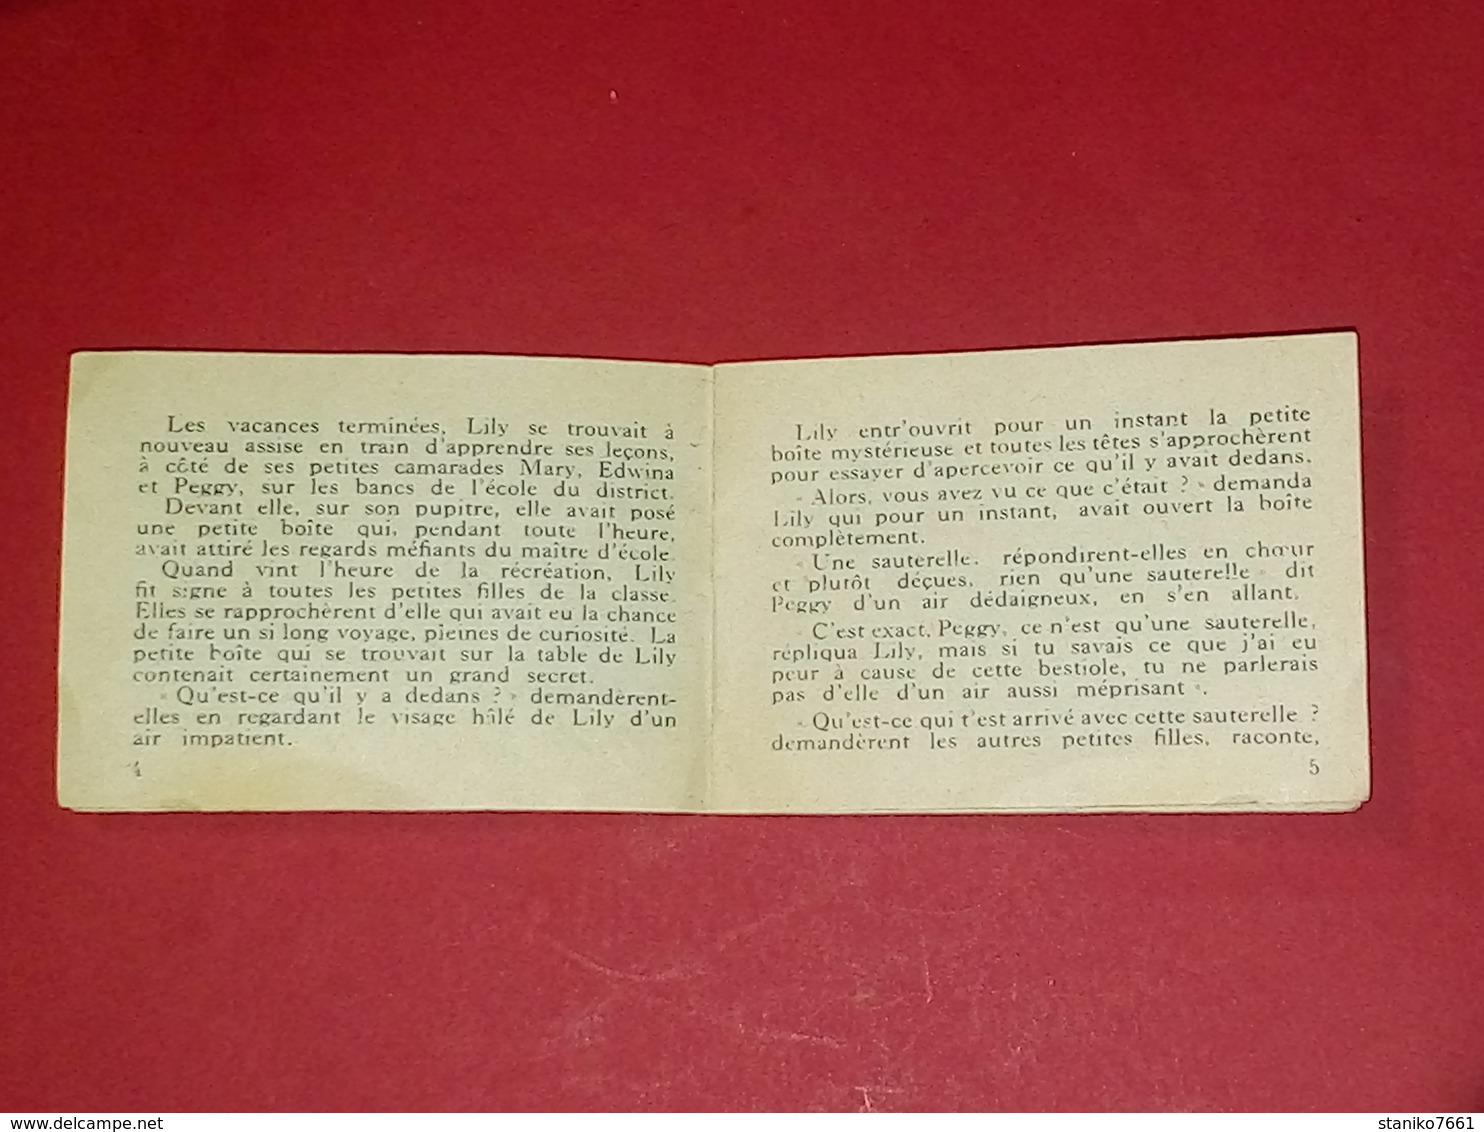 PUBLICITÉ des BISCUITS BROSSARD 1955 Compte à lire ! invasion de sauterelles aux Texas Séries B n°5 VOIR PHOTOS